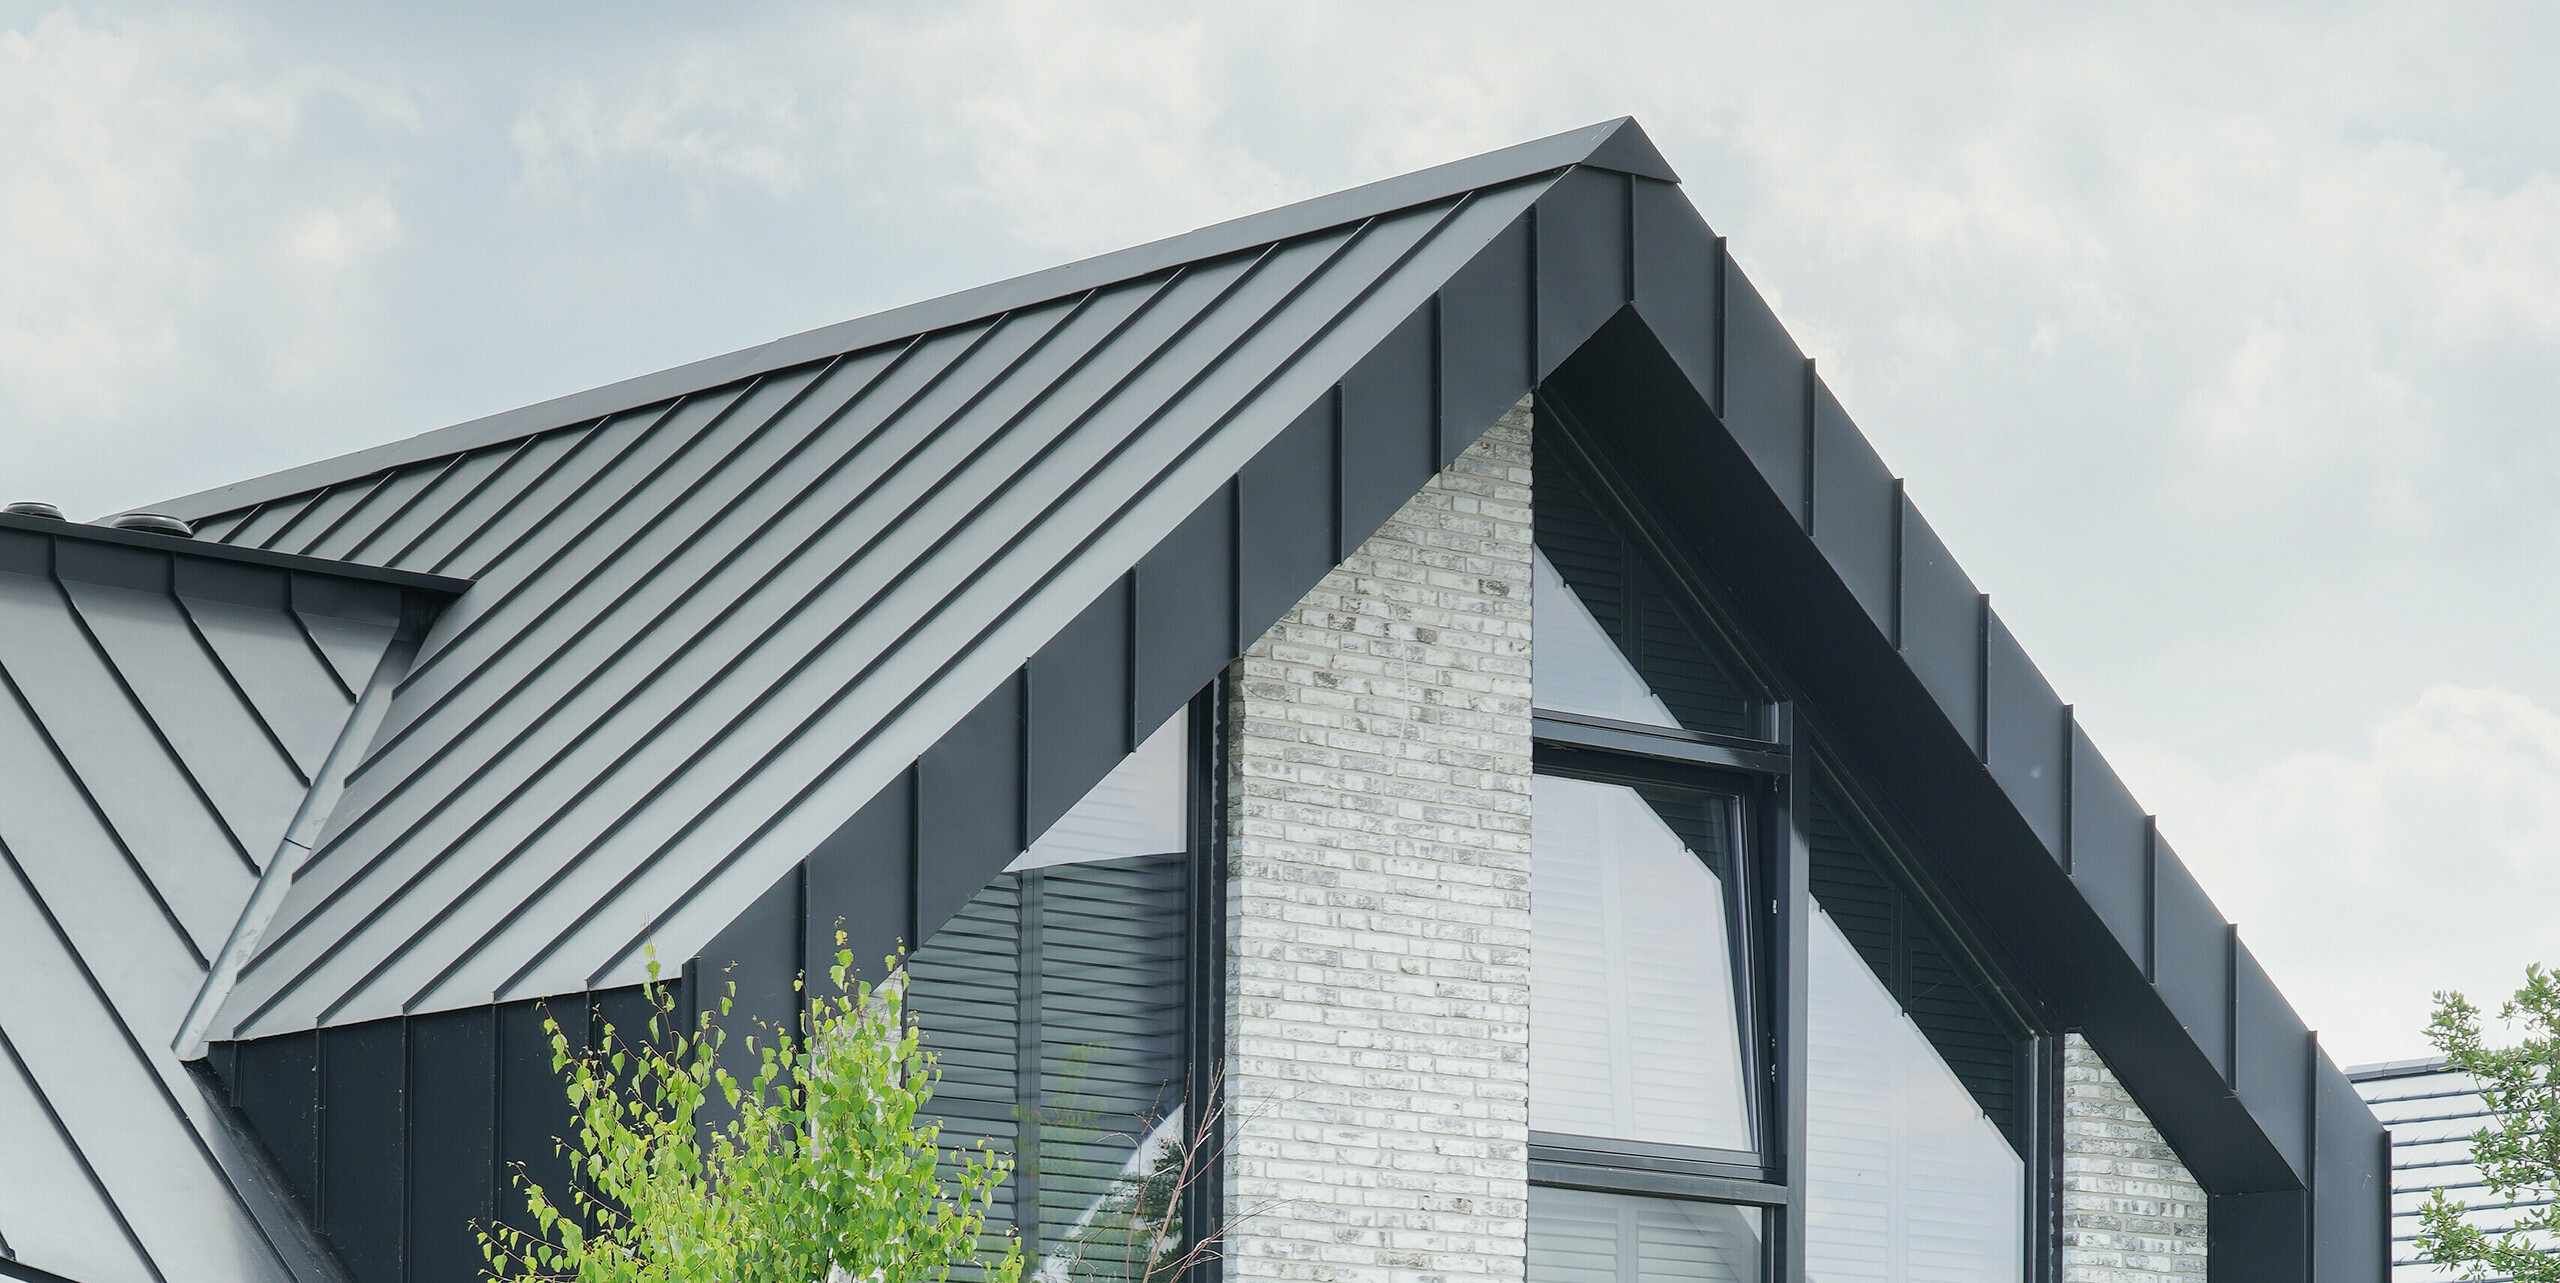 Částečný pohled na moderní obytnou budovu ve Veenendaal, Nizozemsko, s černým pláštěm budovy PREFALZ. Kombinace ostře zkosených linií střechy a strukturované, světle šedé fasády z přírodního kamene vytváří vzrušující architektonickou hru. Velká okna od podlahy ke stropu prolamují fasádu a umožňují výhled do přírody.